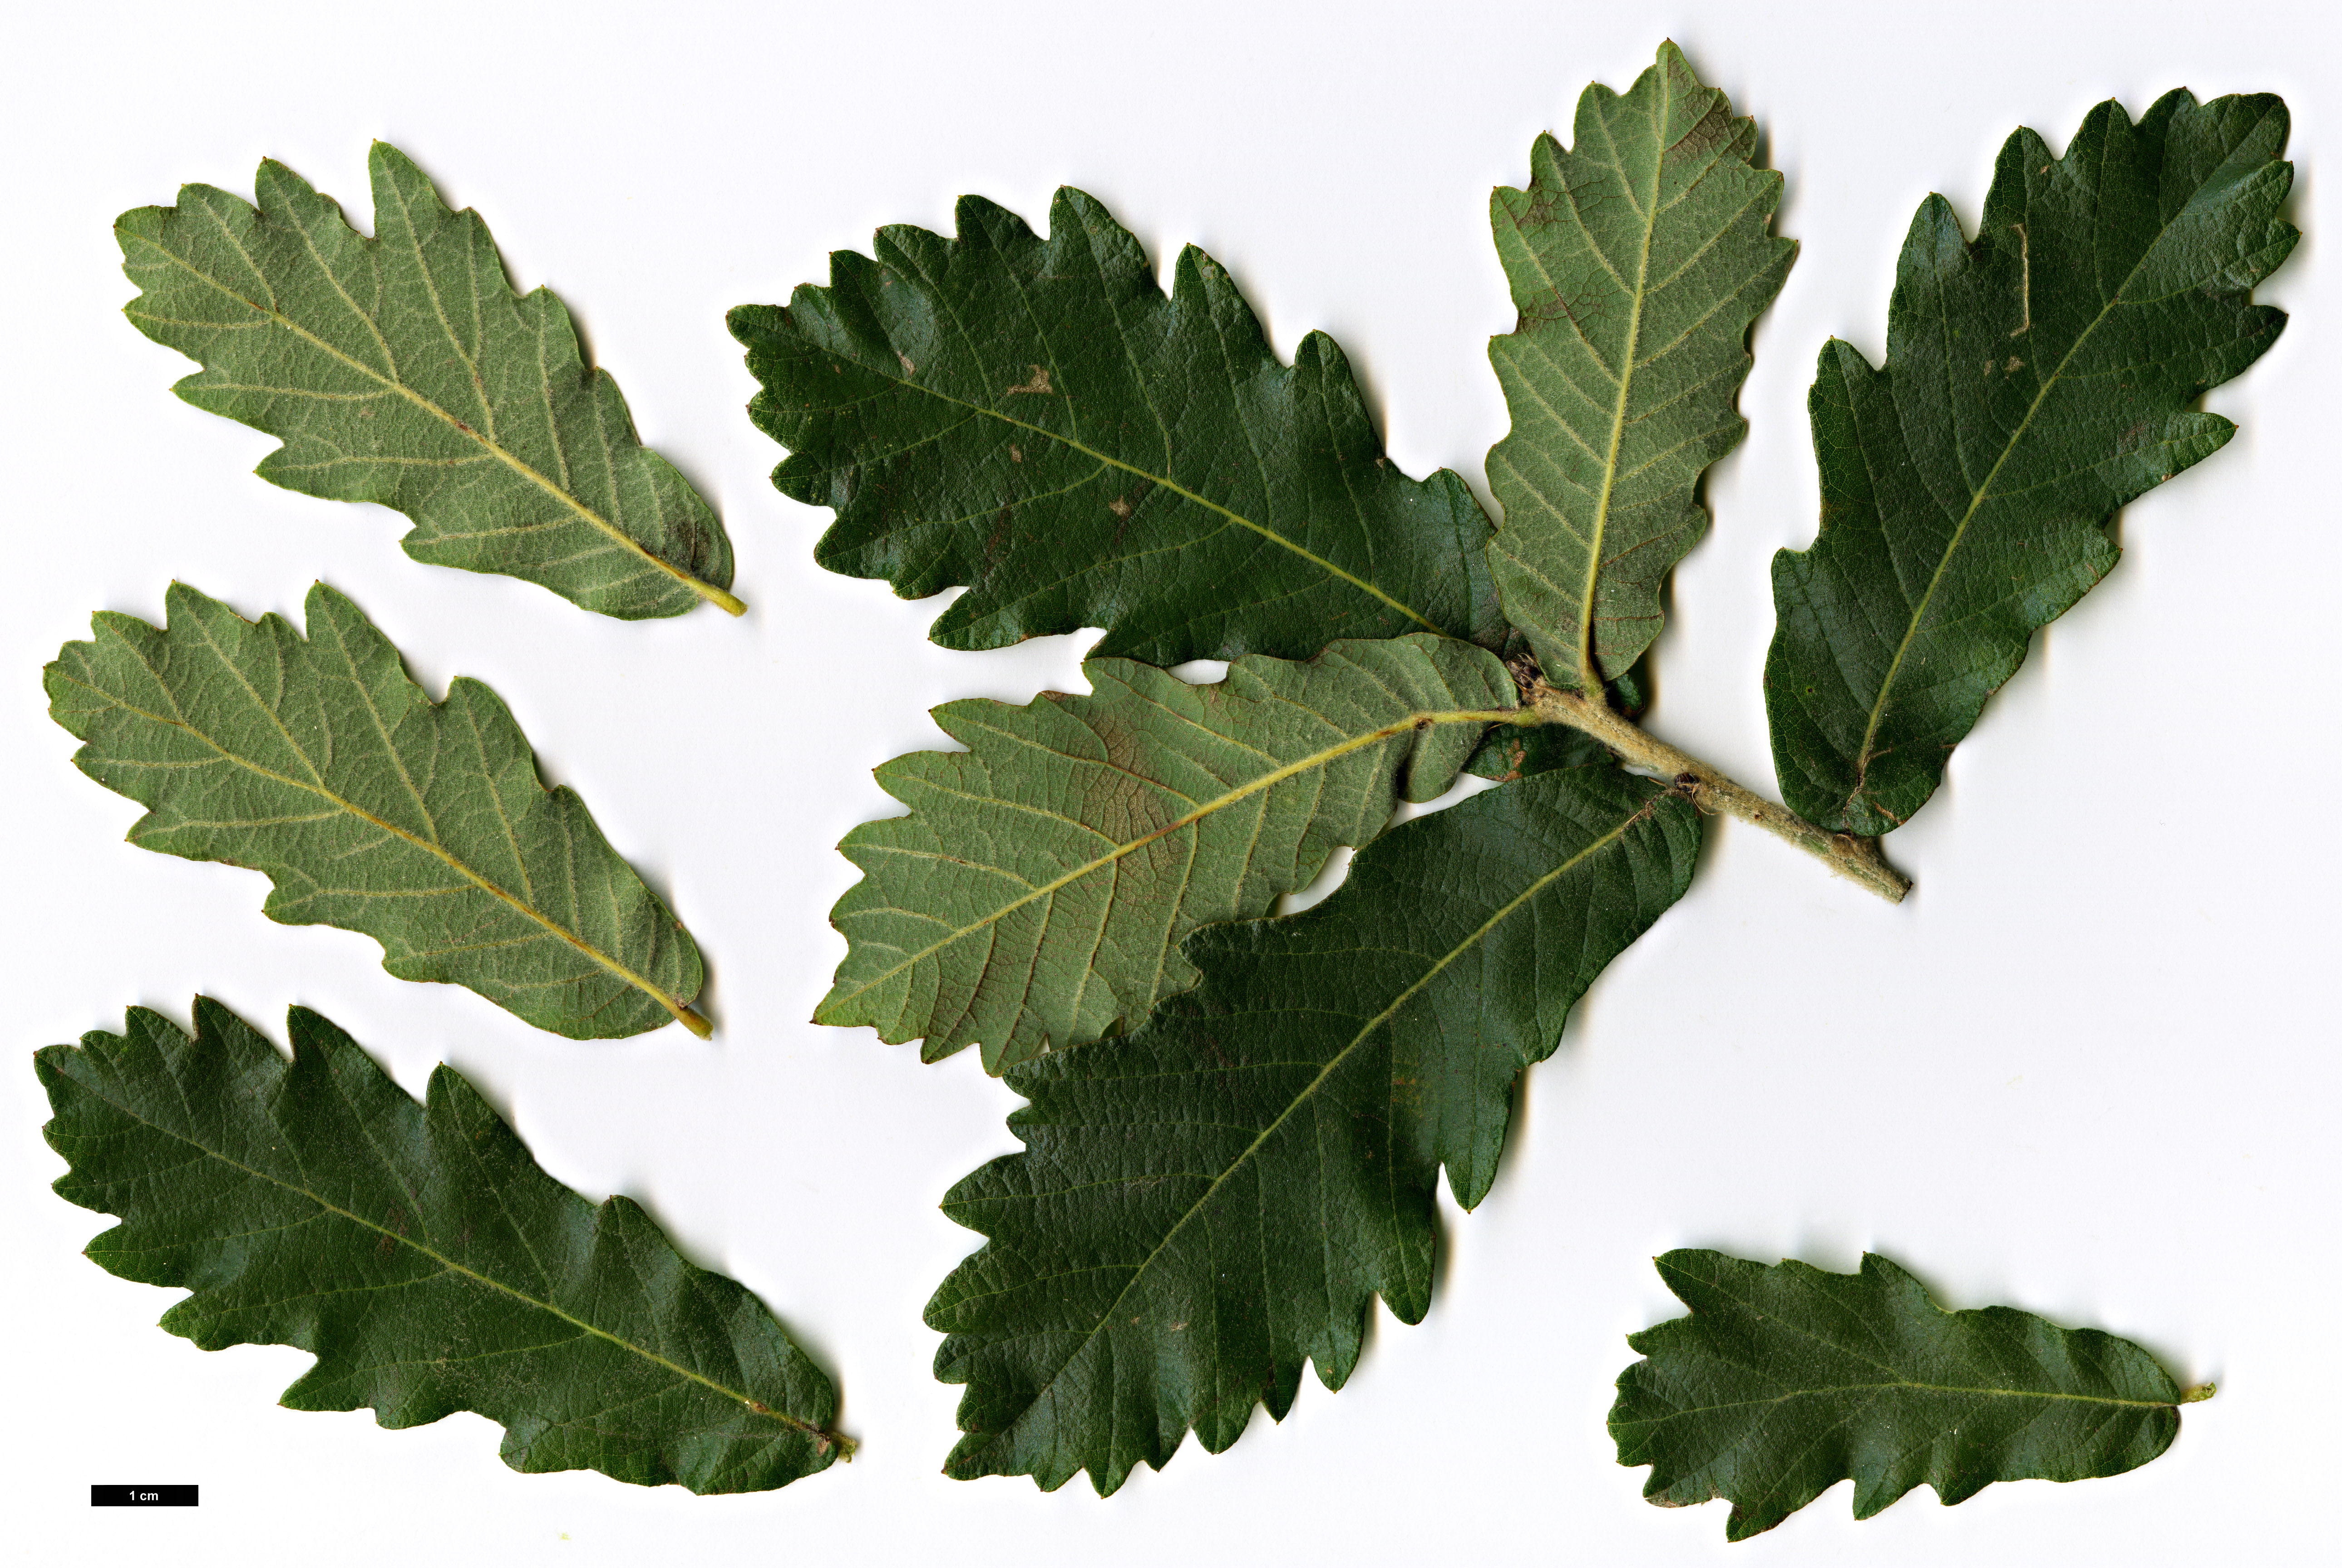 High resolution image: Family: Fagaceae - Genus: Quercus - Taxon: peduncularis